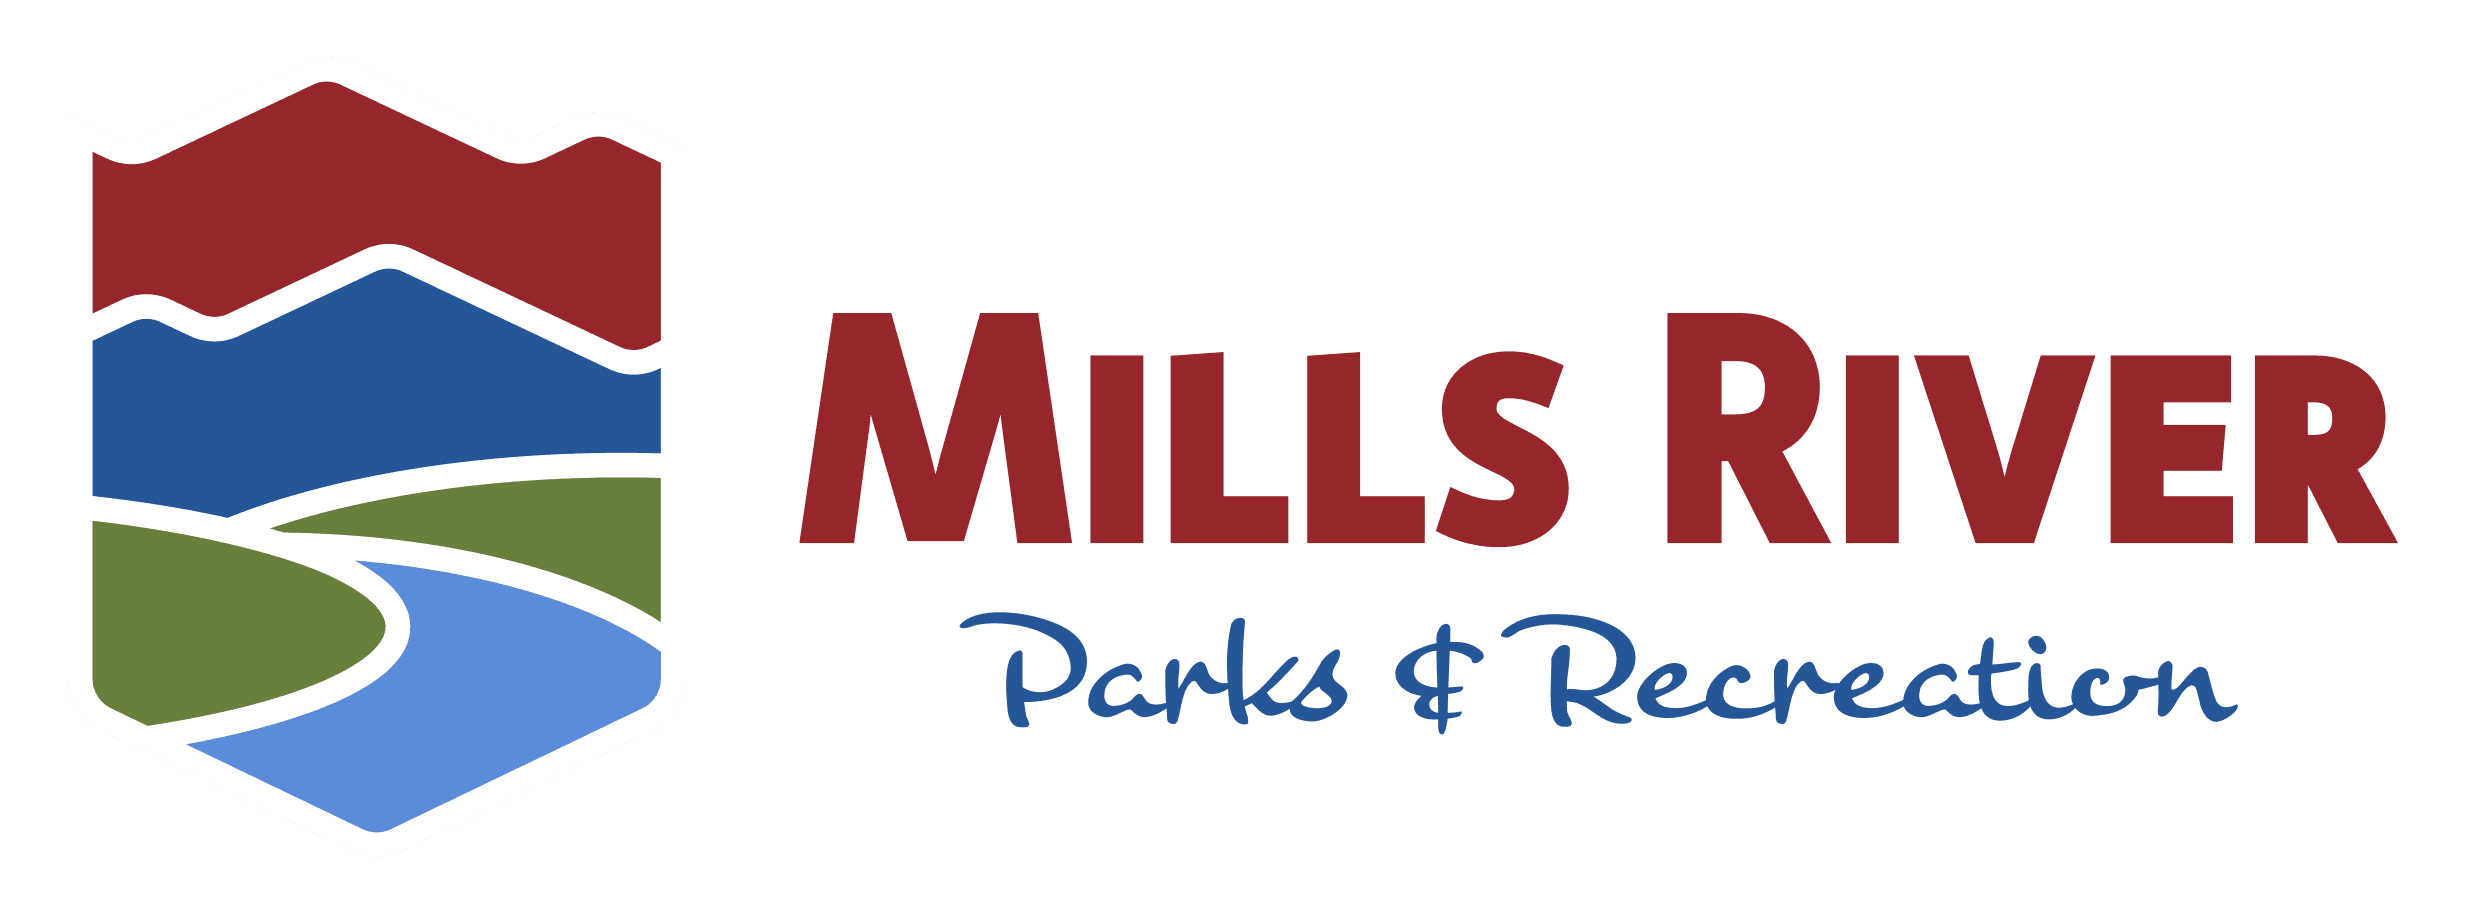 Mills River Parks & Rec.